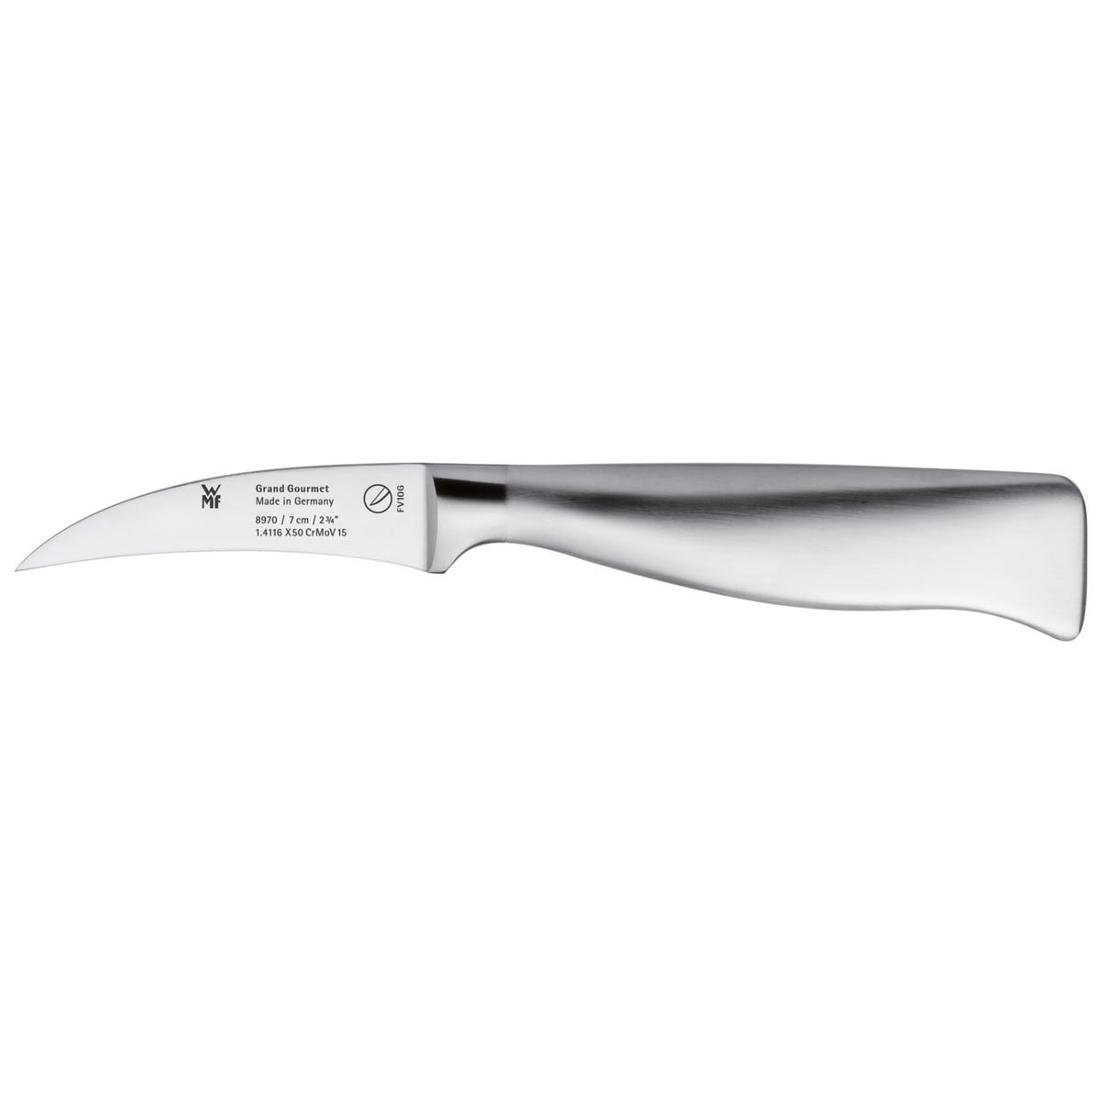 WMF nóż wygięty 7cm Grand Gourmet 18.8970.6032